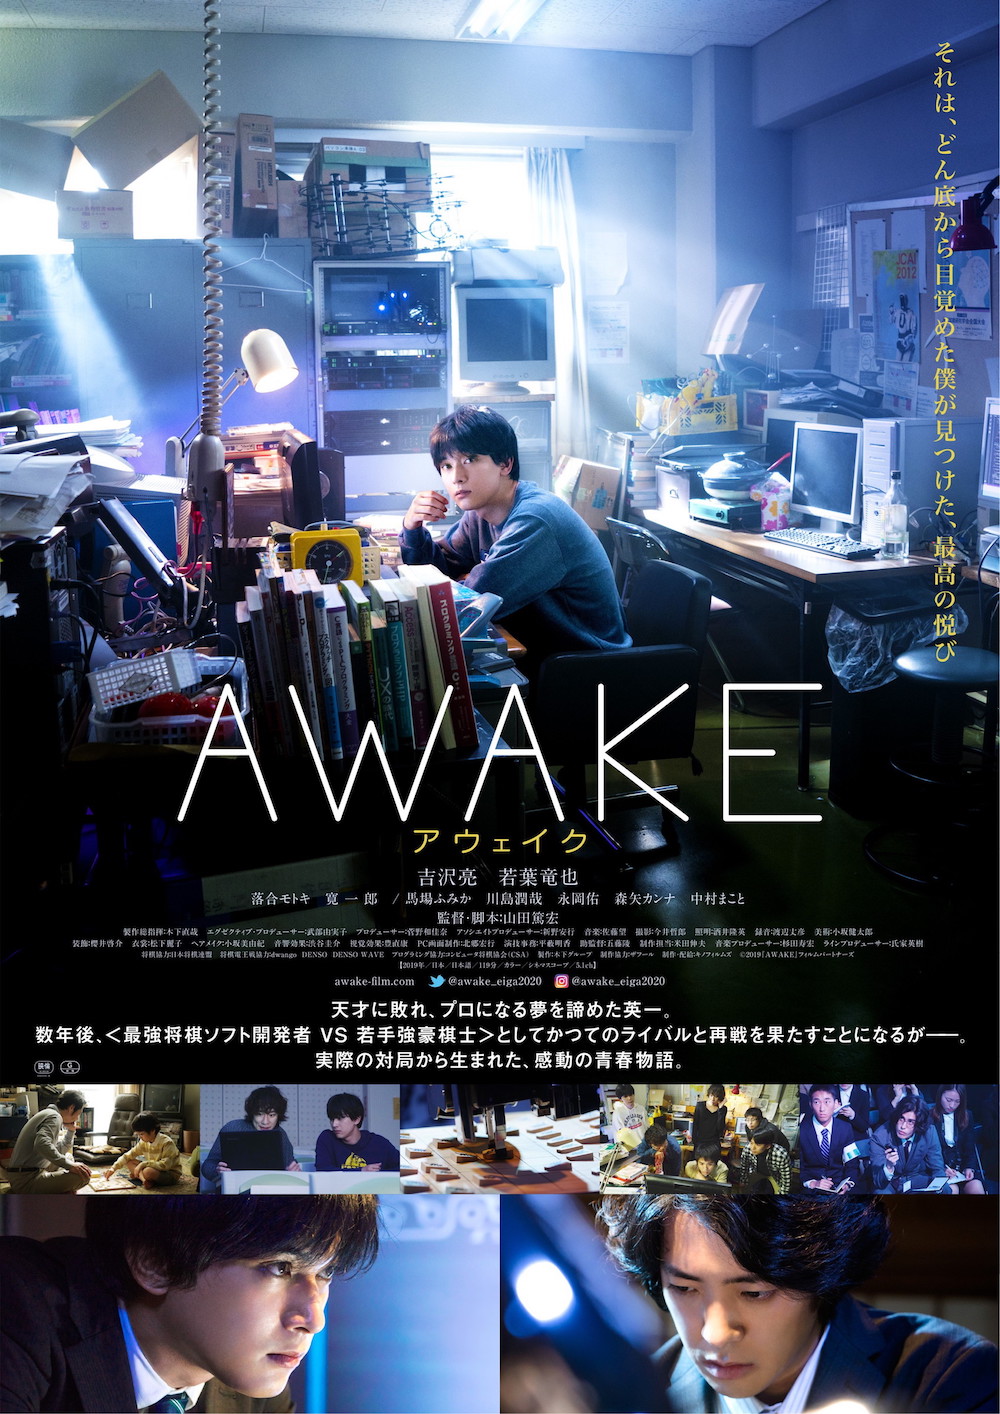 吉沢亮『AWAKE』ポスター、伊藤かりん、ゴールデンボンバー歌広場淳ら各界著名人からの絶賛コメントも